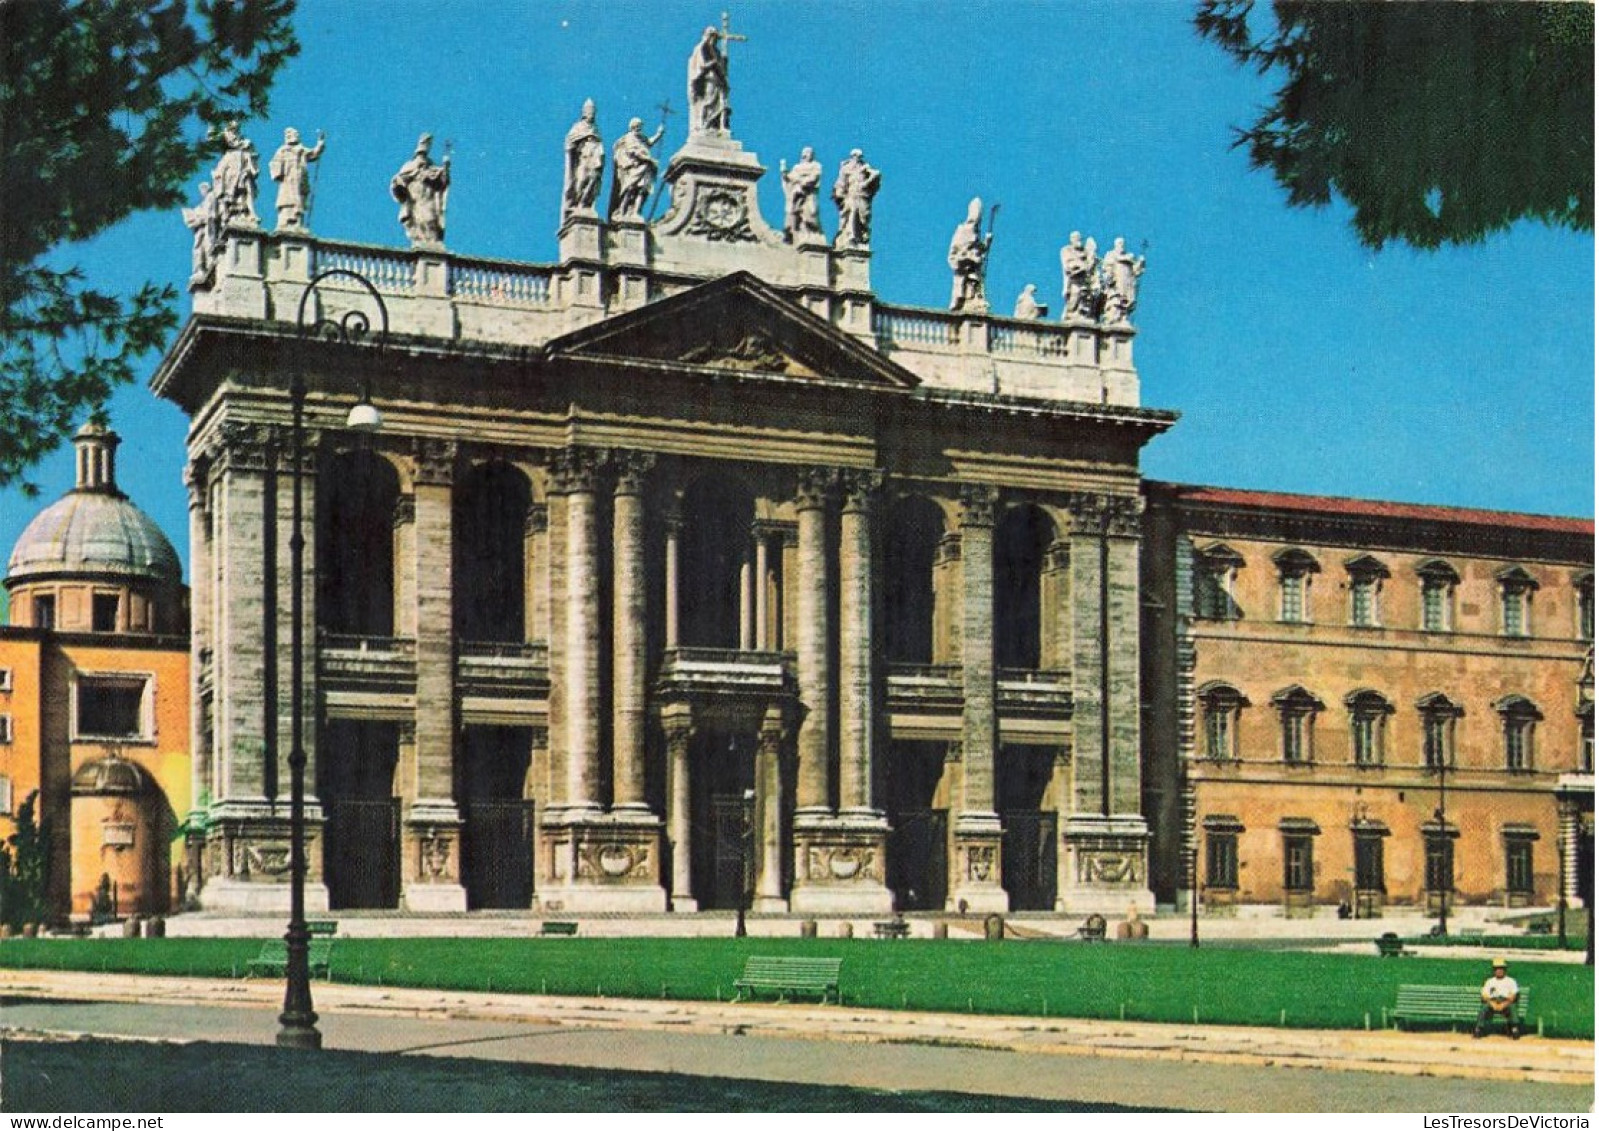 ITALIE - Roma - Basilica S. Giovanni In Laterano - Colorisé - Carte Postale - Andere Monumente & Gebäude